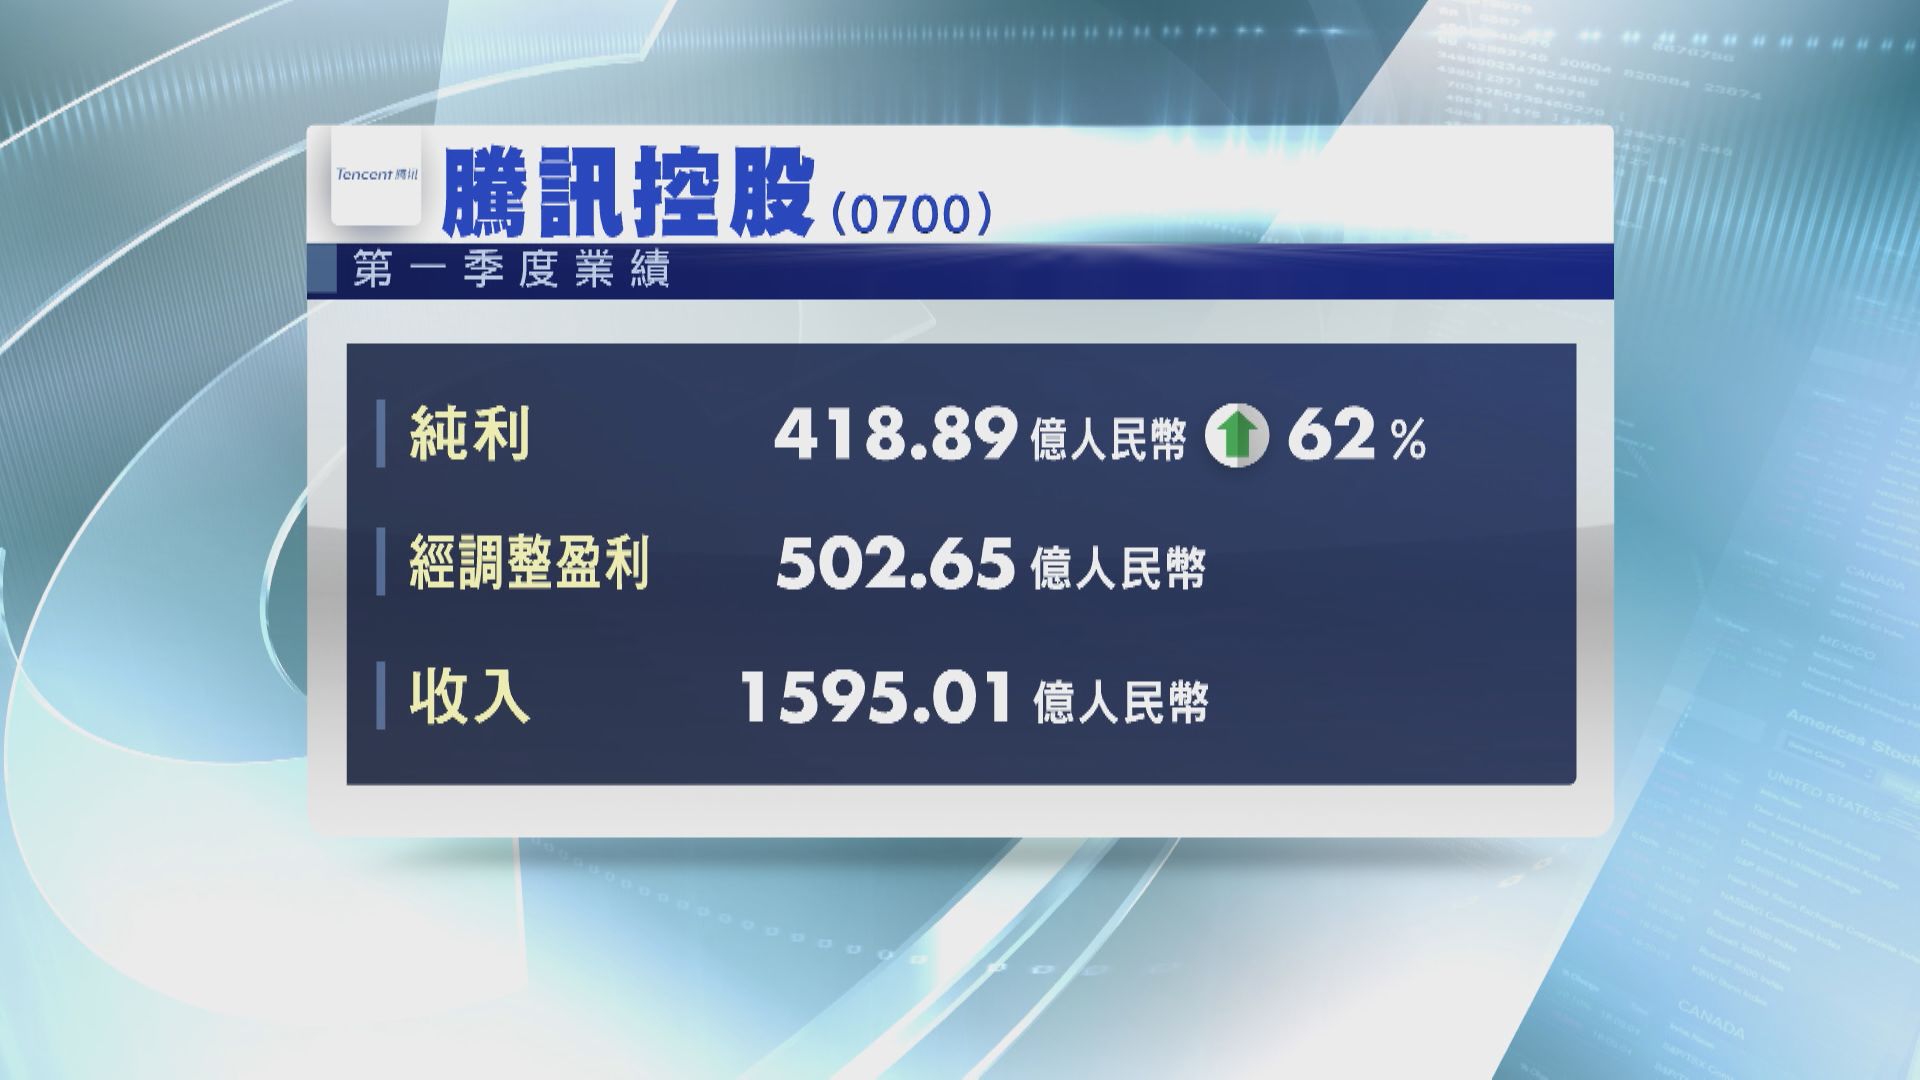 【股王業績】騰訊首季多賺62%至418.89億人幣